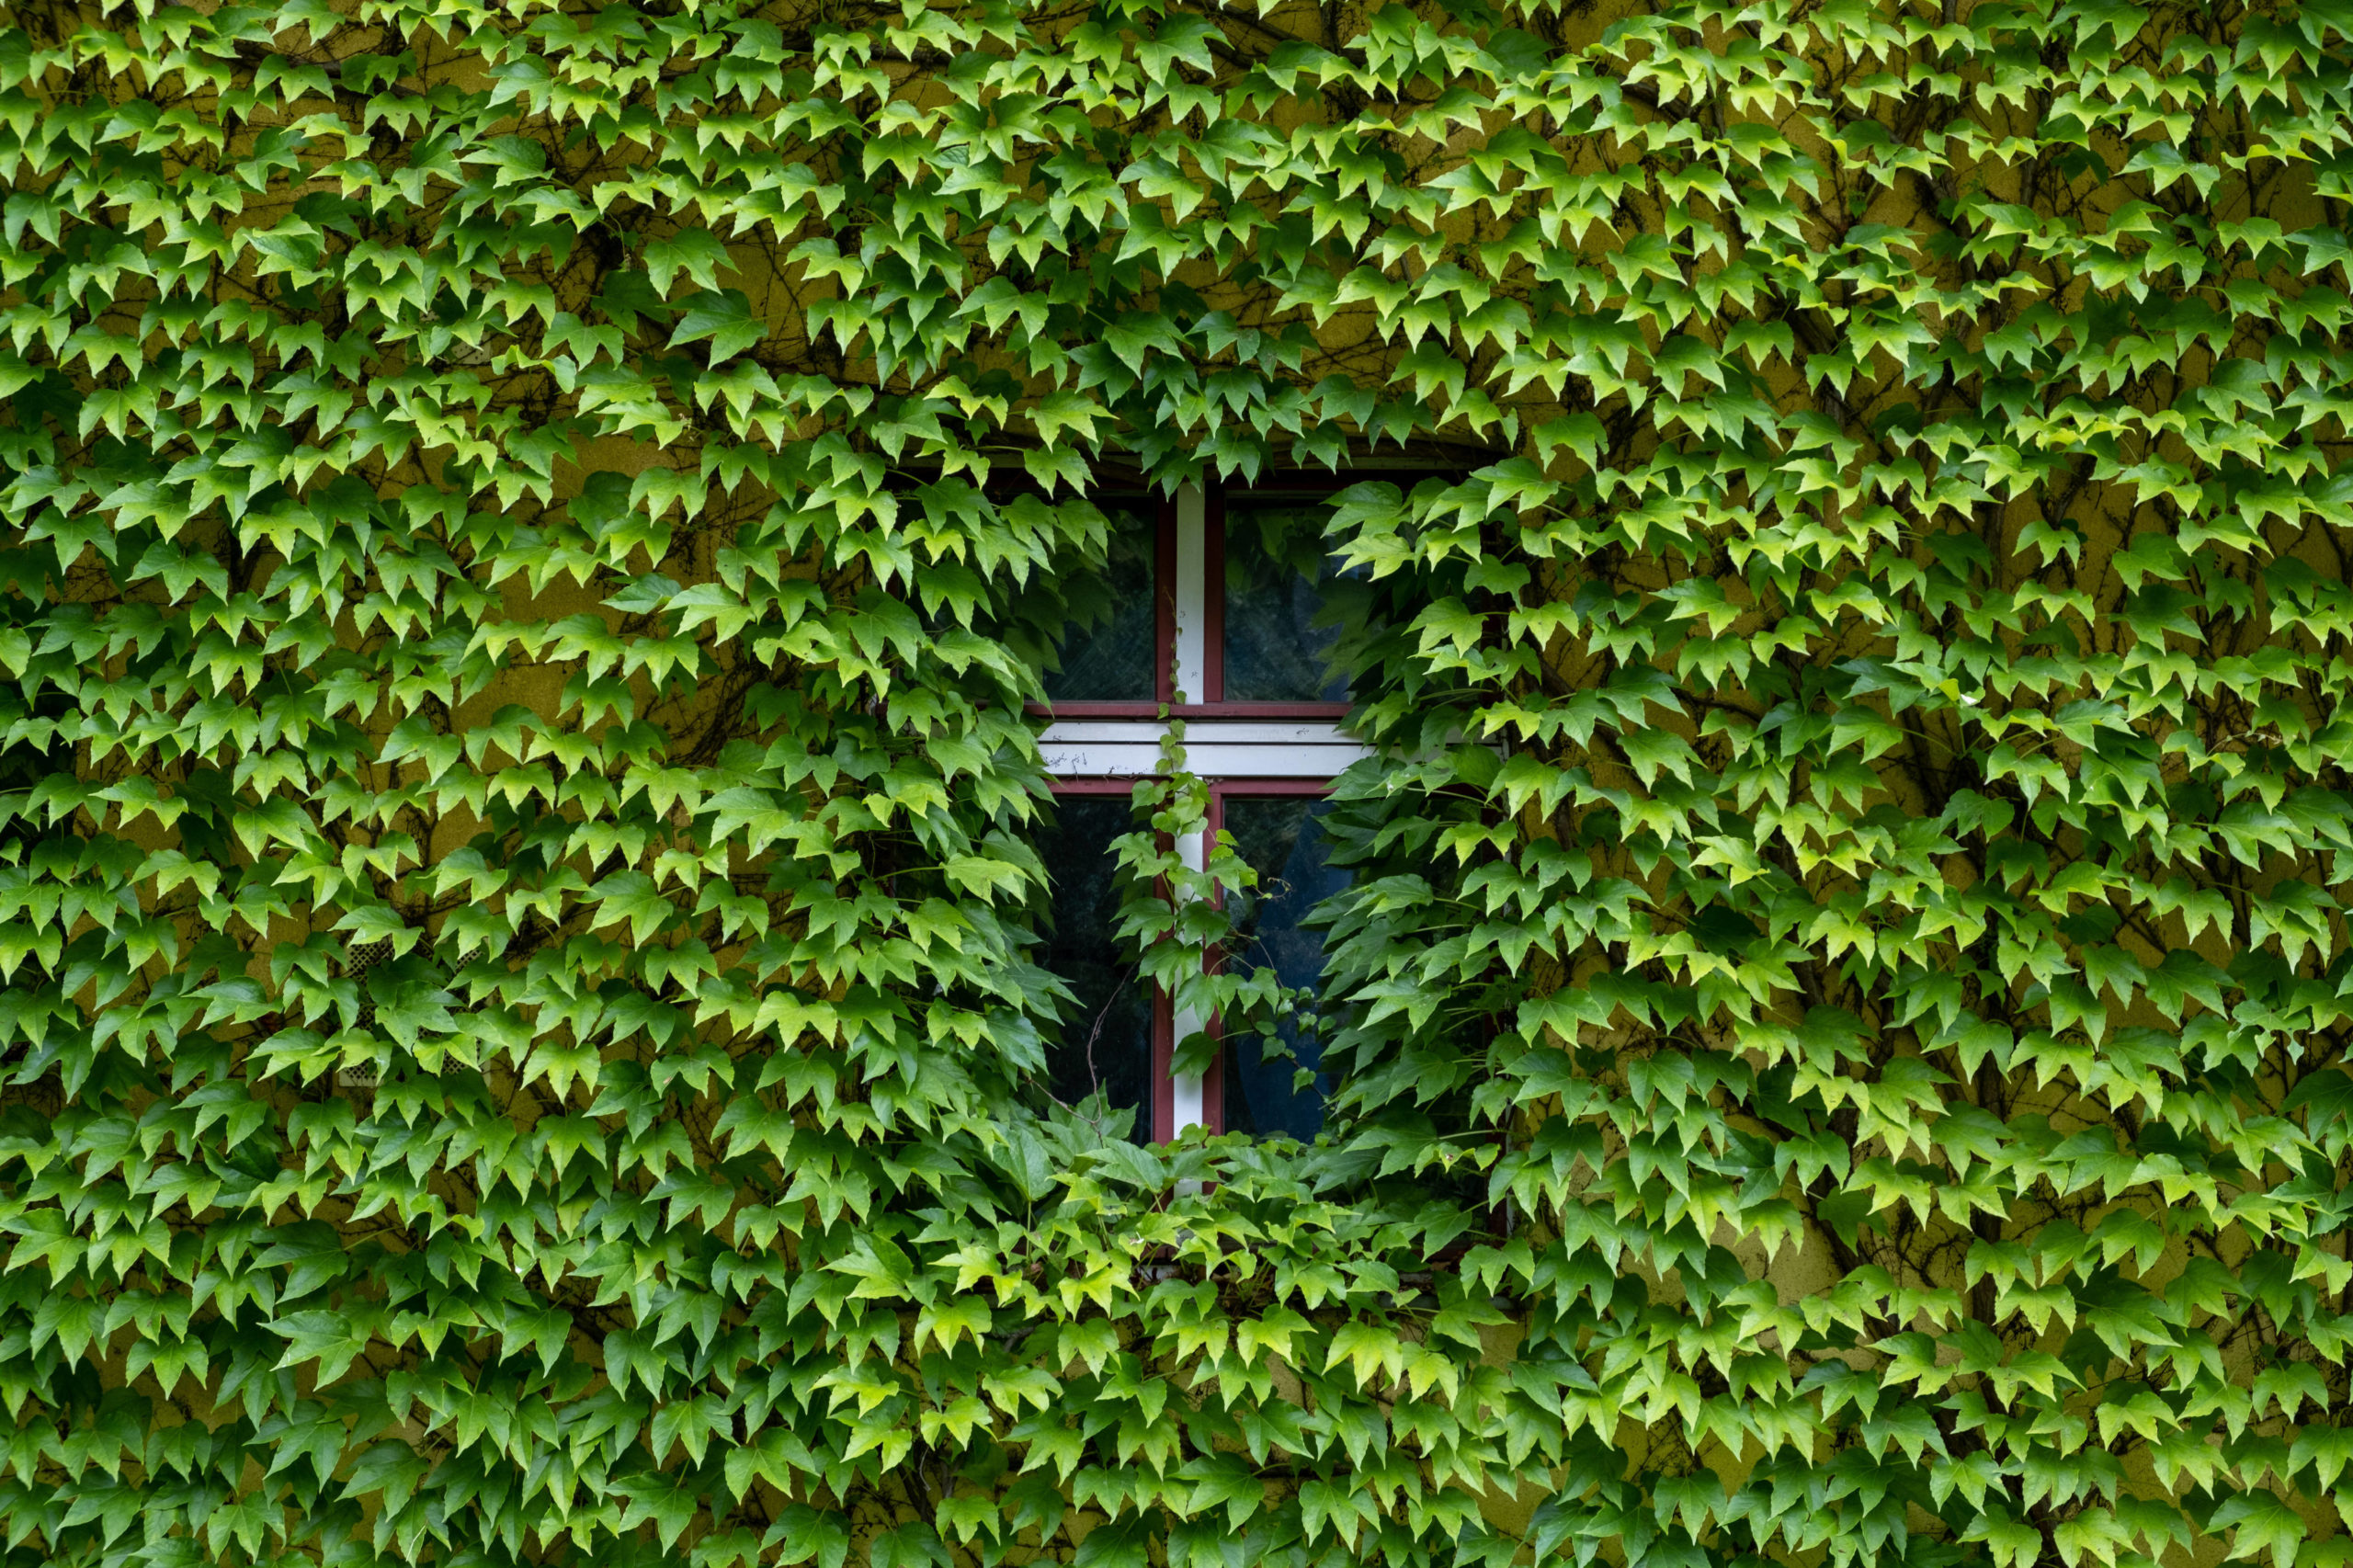 Altbau-Fassaden: Mit Weinlaub zugewuchertes Fenster eines Altbaus in Prenzlauer Berg. Foto: Imago/Seeliger